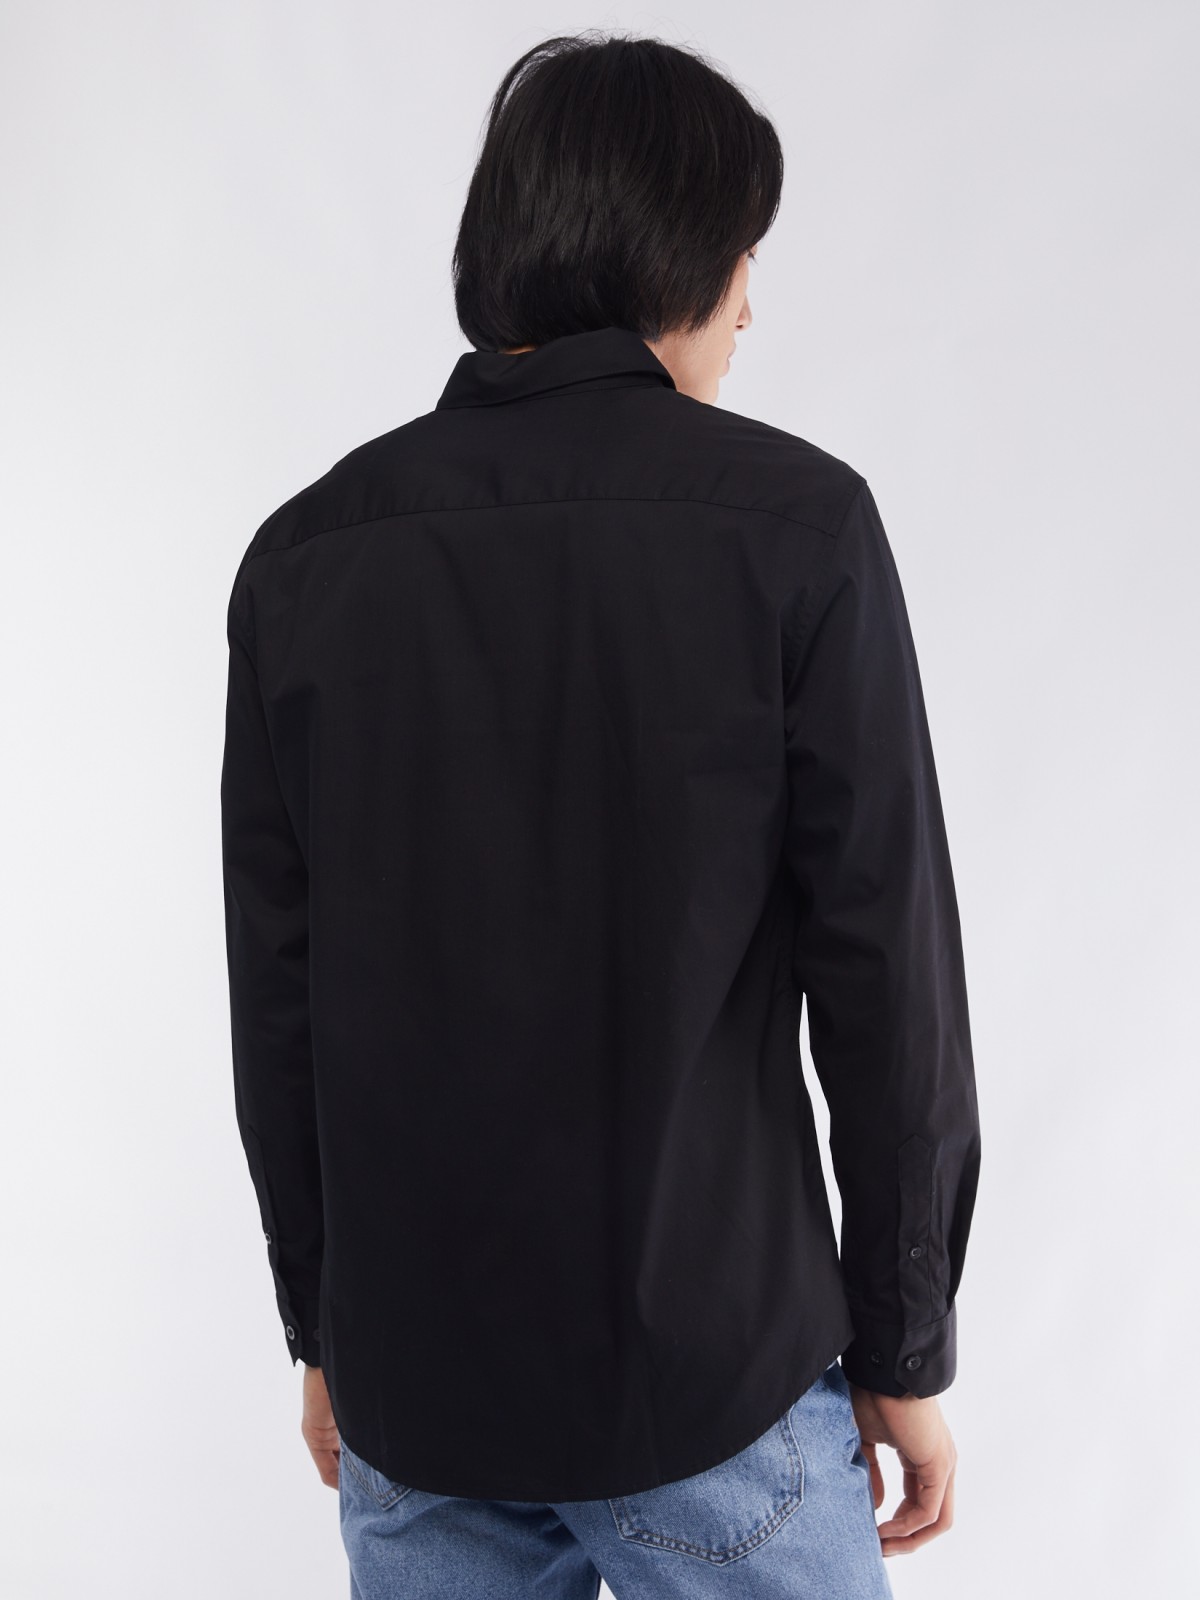 Офисная рубашка прямого силуэта с карманом zolla 014112162112, цвет черный, размер S - фото 6